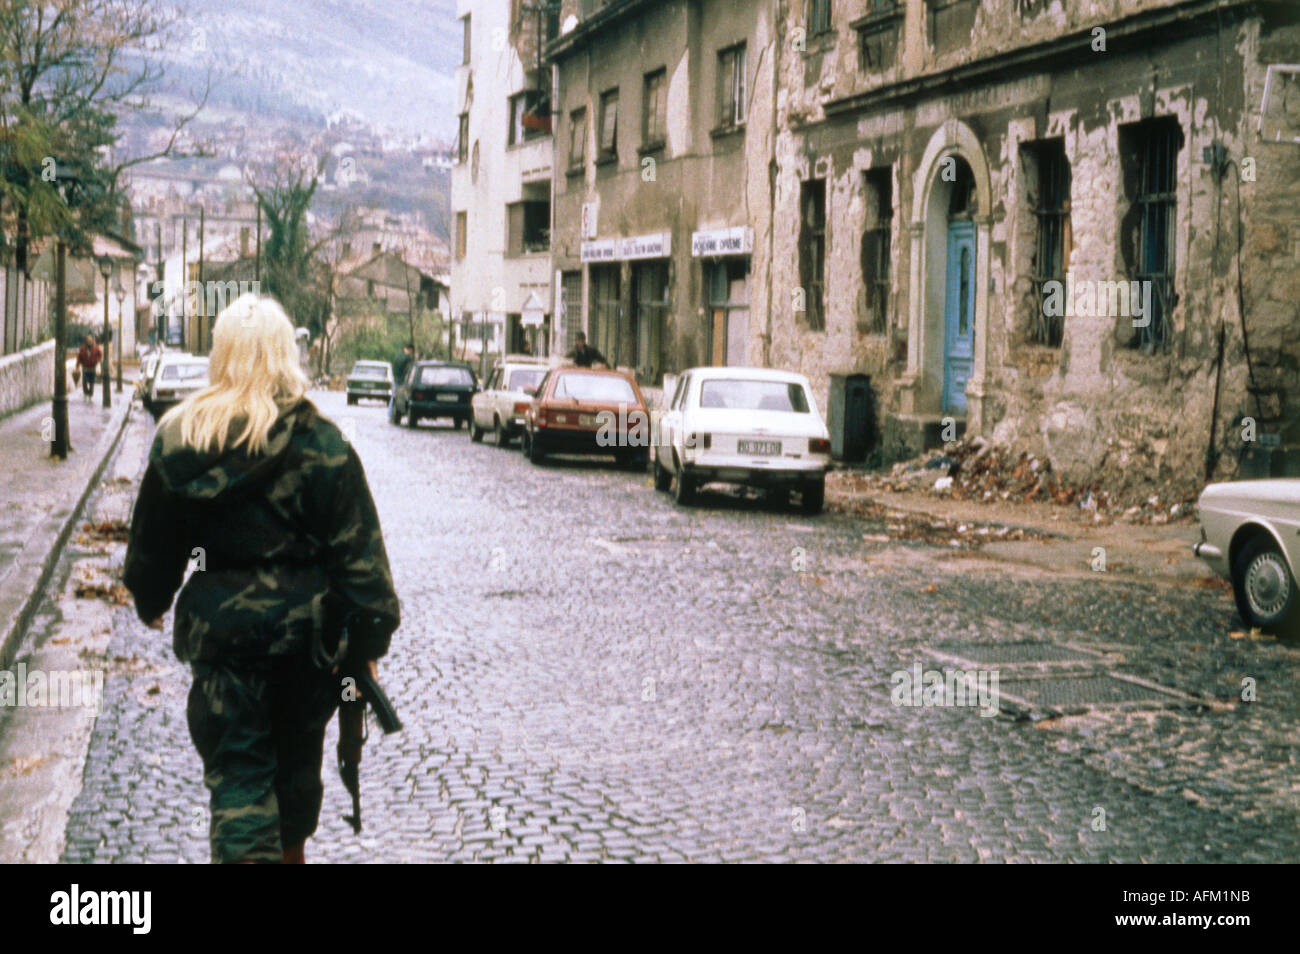 Ereignisse, Bosnienkrieg 1991 - 1995, Frau aus der Miliz auf der Straße, Mostar, 21.2.1992, ehemaliges Jugoslawien, Herzegowina, Waffe, historisch, historisch, 20. Jahrhundert, Menschen, 1990er Jahre, Frauen, weiblich, Stockfoto